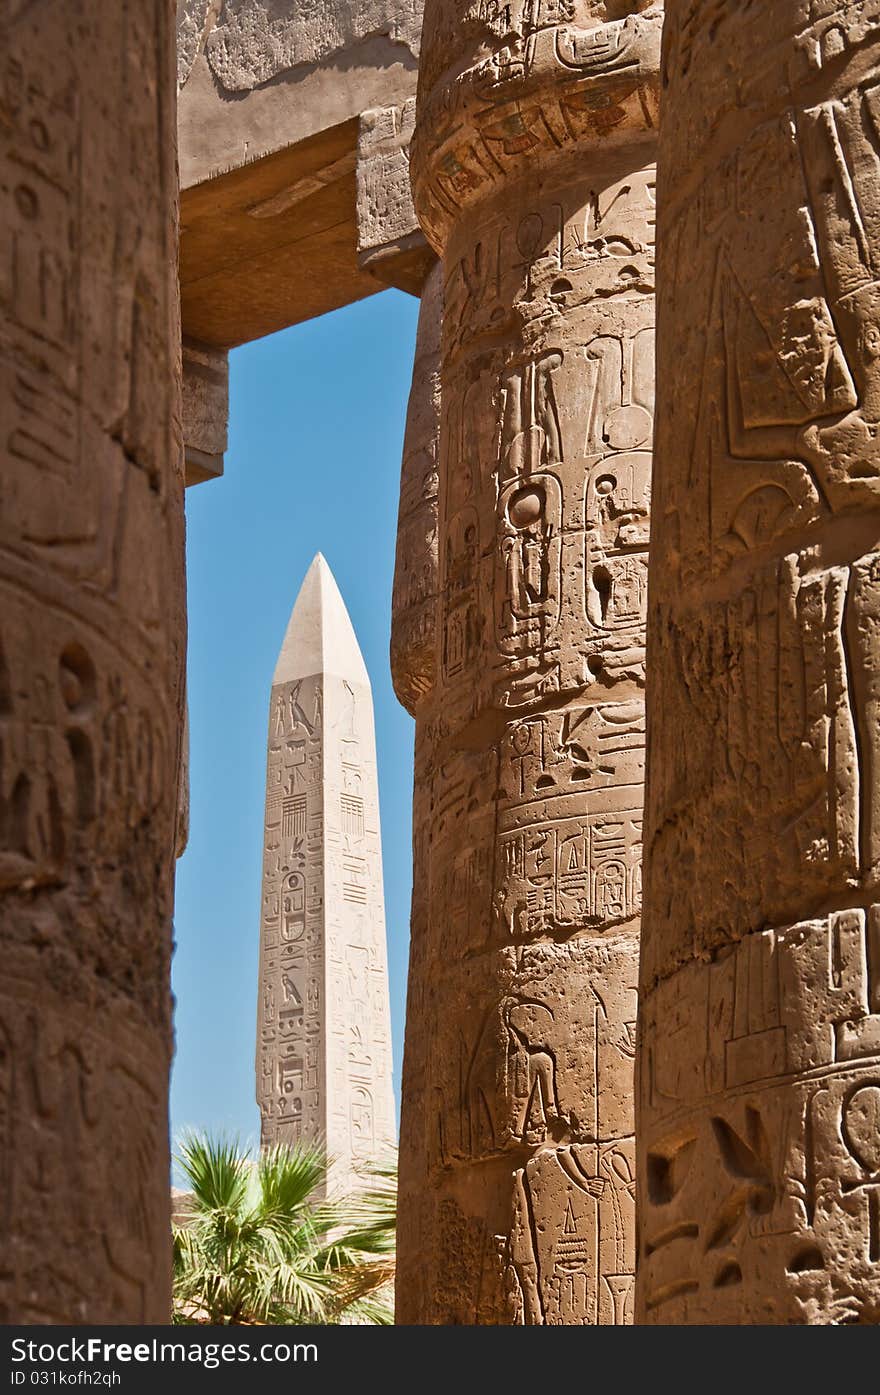 Columns and obelisk in Temple of Karnak, Luxor, Egypt. Columns and obelisk in Temple of Karnak, Luxor, Egypt